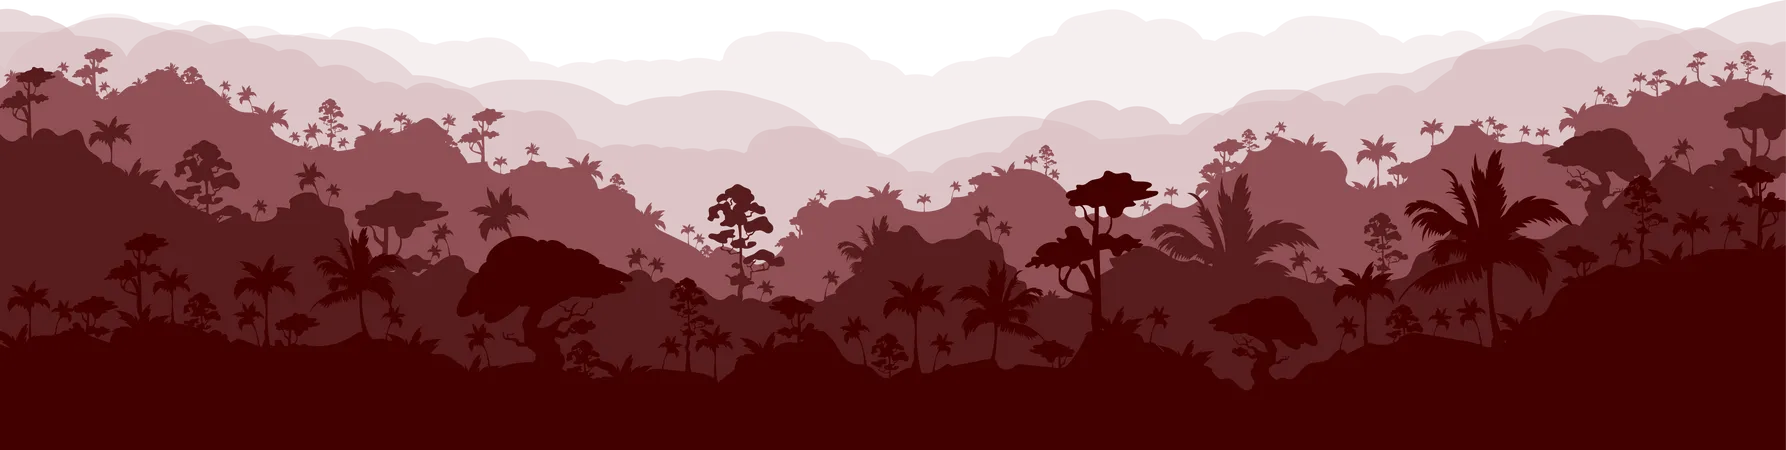 Paysage de forêt brune  Illustration